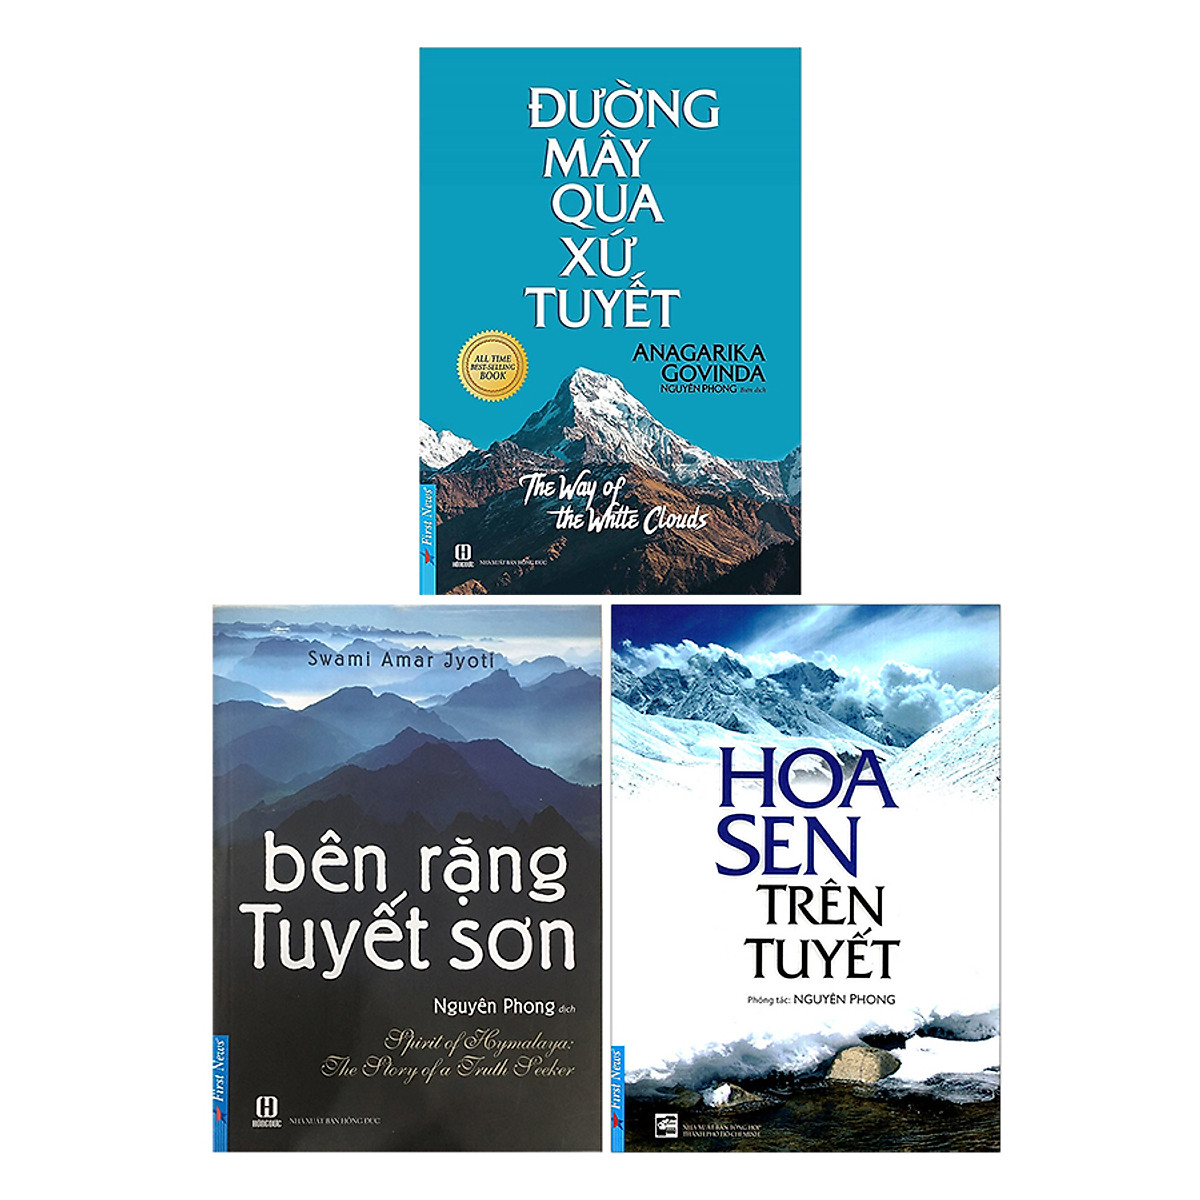 Combo Bên Rặng Tuyết Sơn, Hoa Sen Trên Tuyết, Đường Mây Qua Xứ Tuyết (3 Cuốn) (Tái Bản 2019)